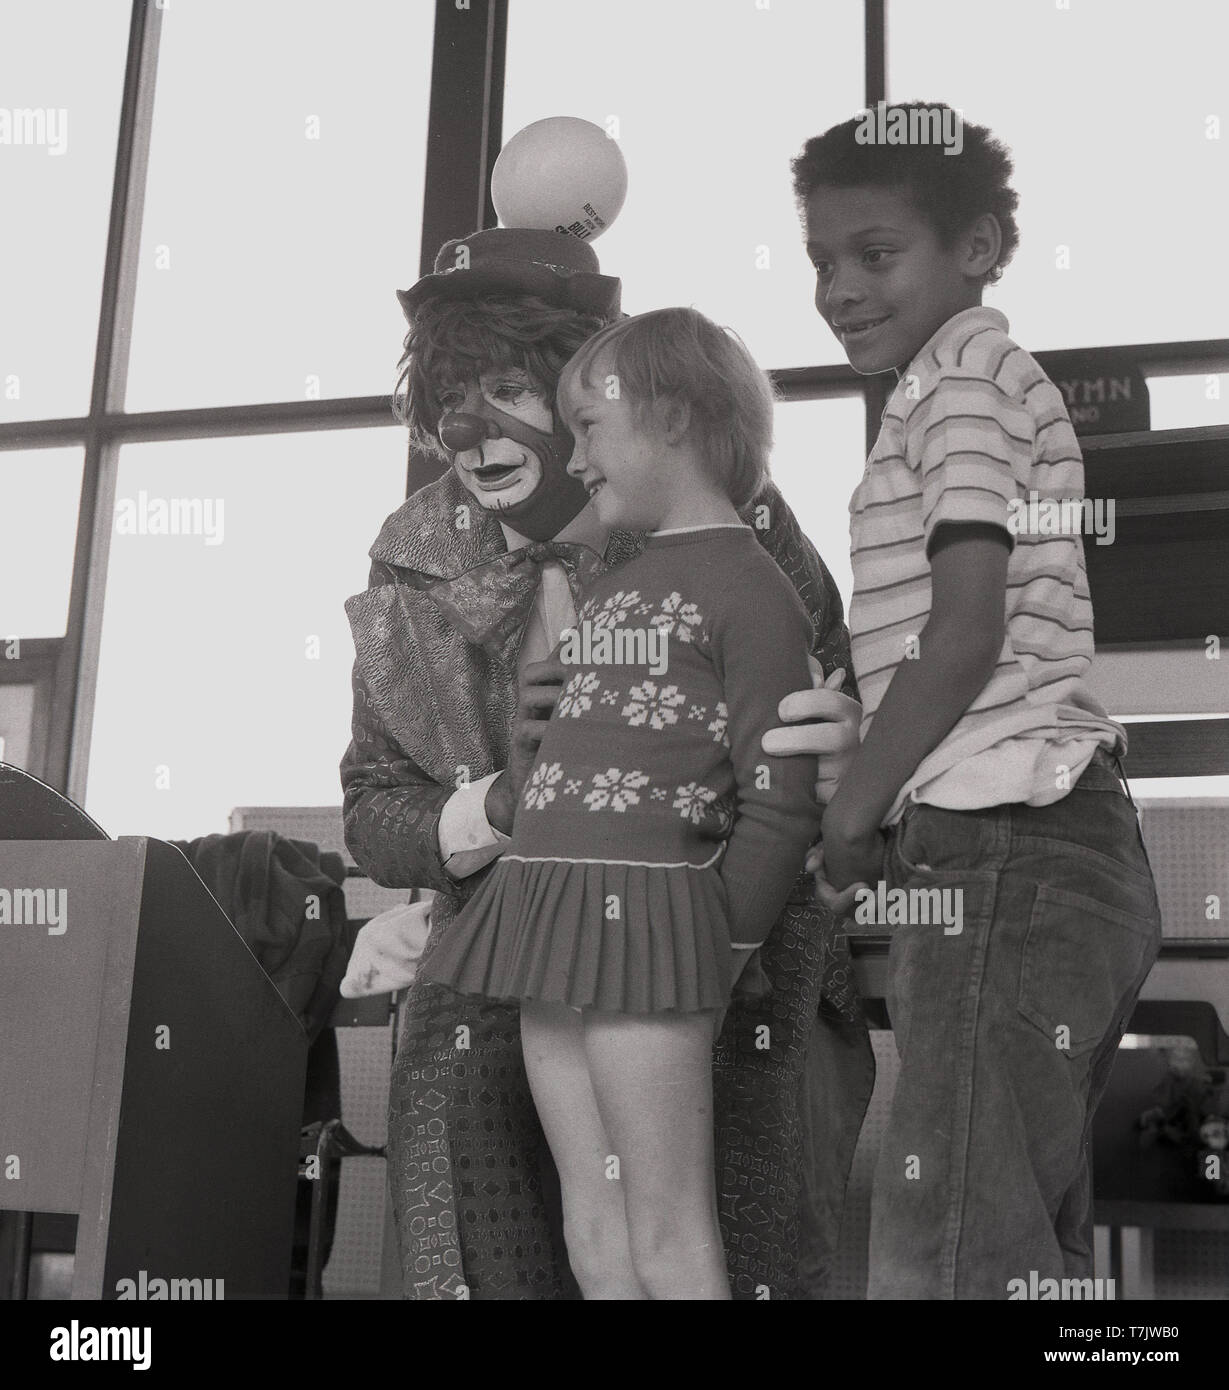 Années 1960, historique, un clown de cirque de visiter une école primaire, sur la scène avec deux jeunes enfants de l'école, dans le sud de Londres, Angleterre, Royaume-Uni. Banque D'Images